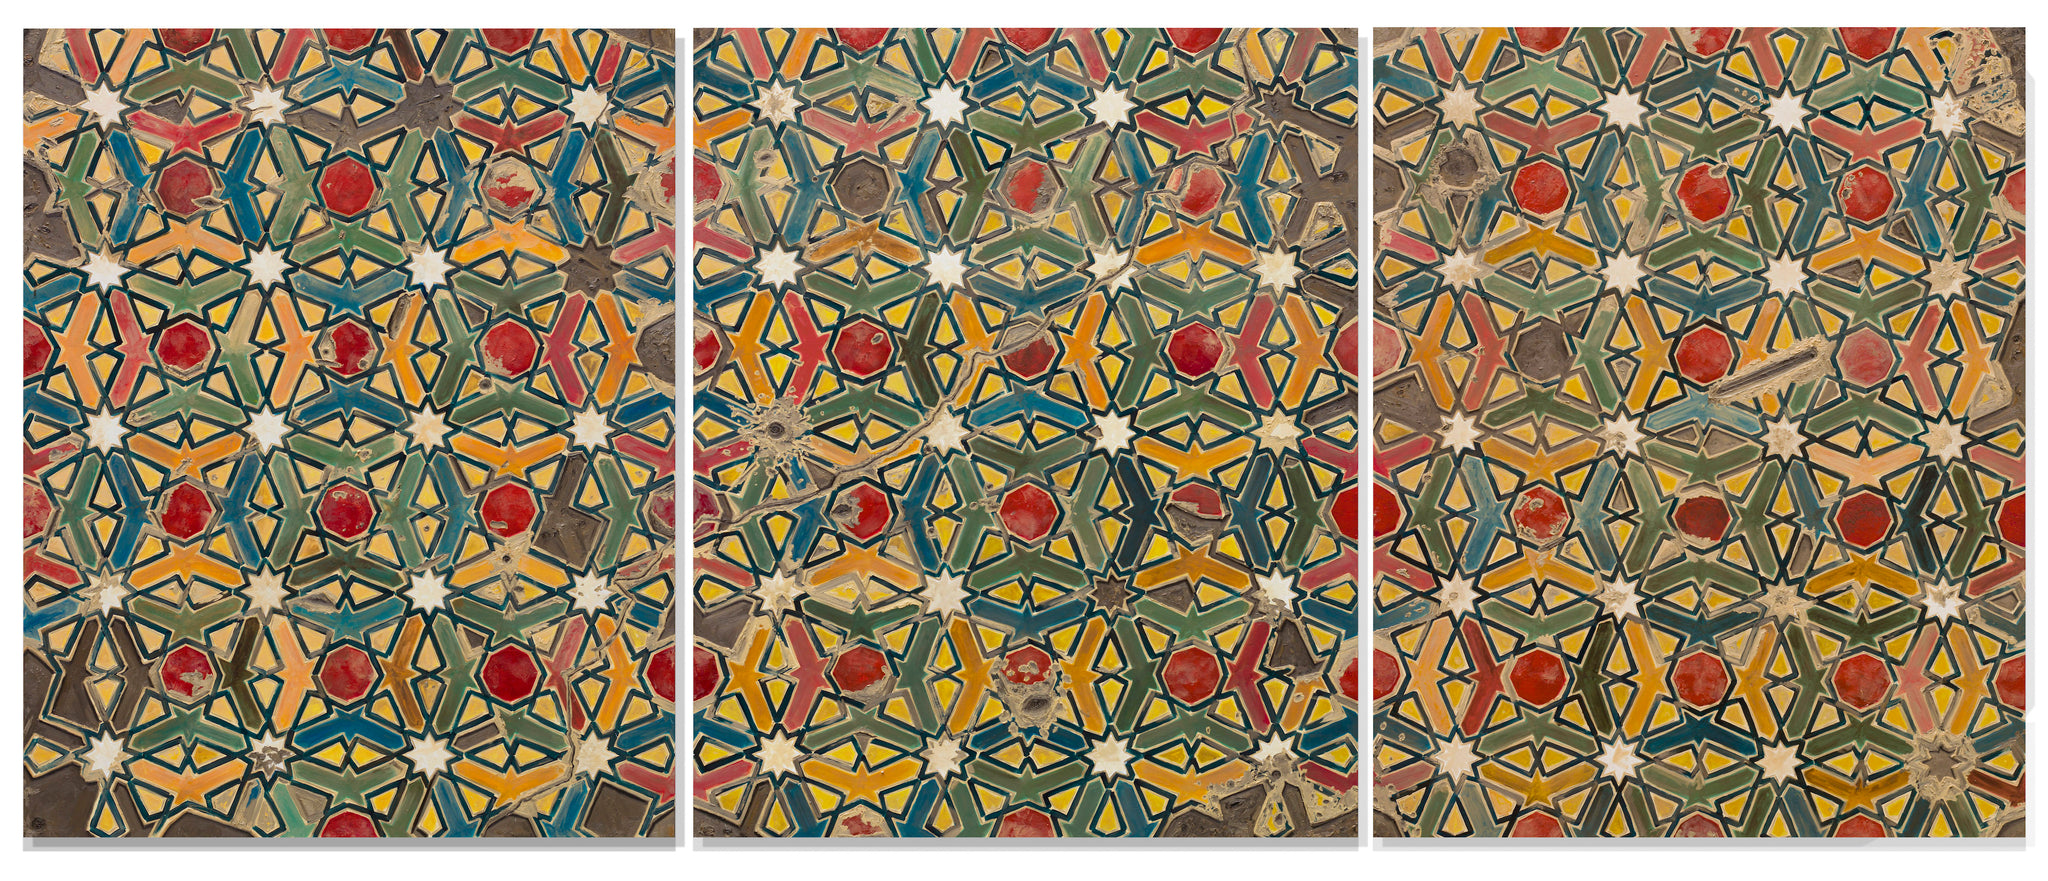 James Razko, "Tiles Triptych"